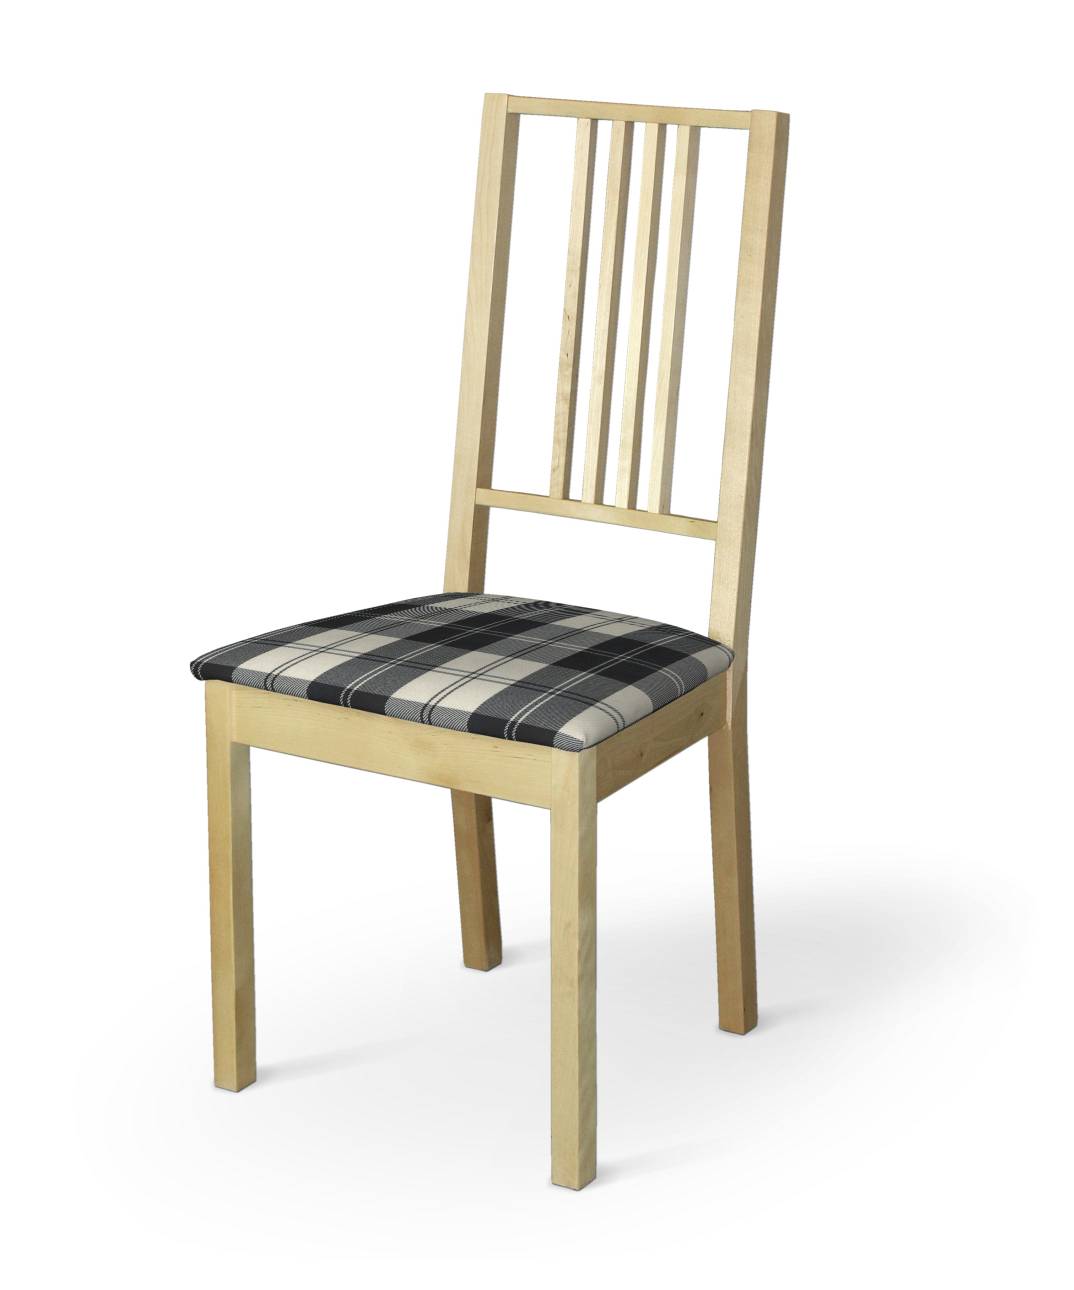 Dekoria Potah na sedák židle Börje, černo-bílá kostka, potah sedák židle Börje, Edinburgh, 115-74